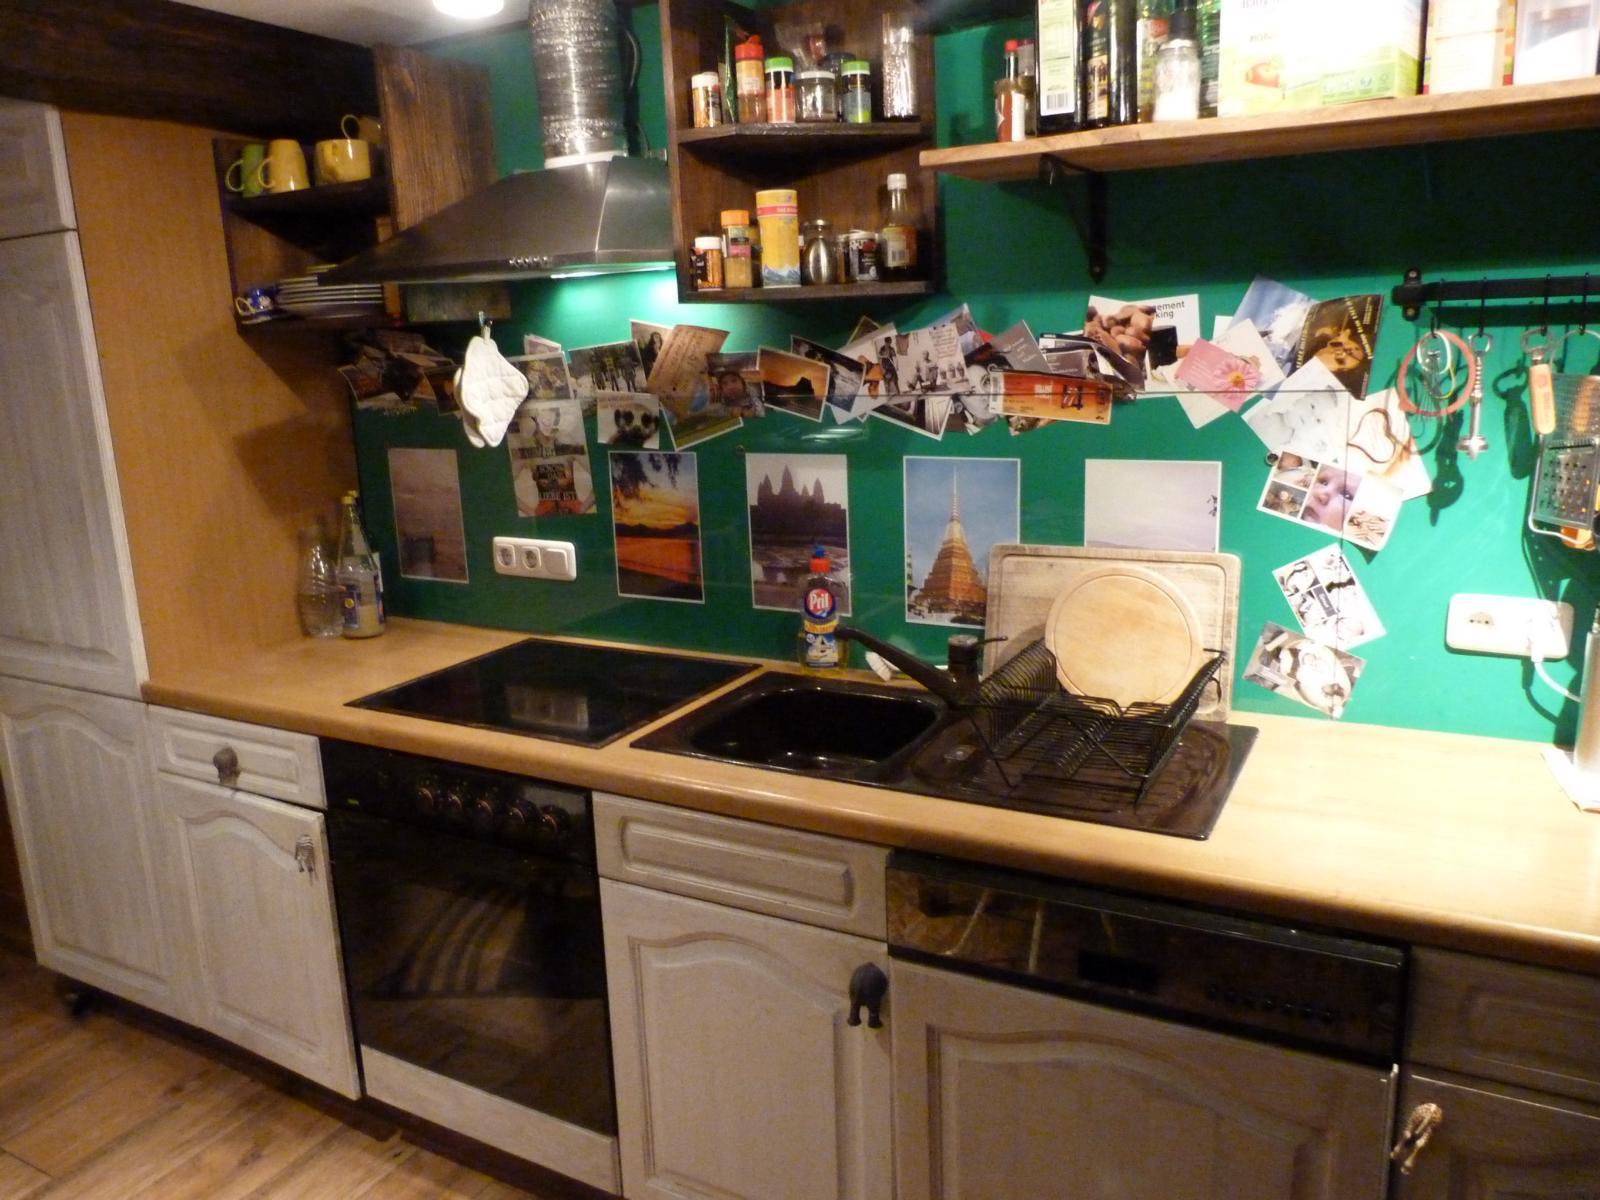 Vintage Küche vor knallgrüner Wand #vintageküche ©Sabine Wasmeier